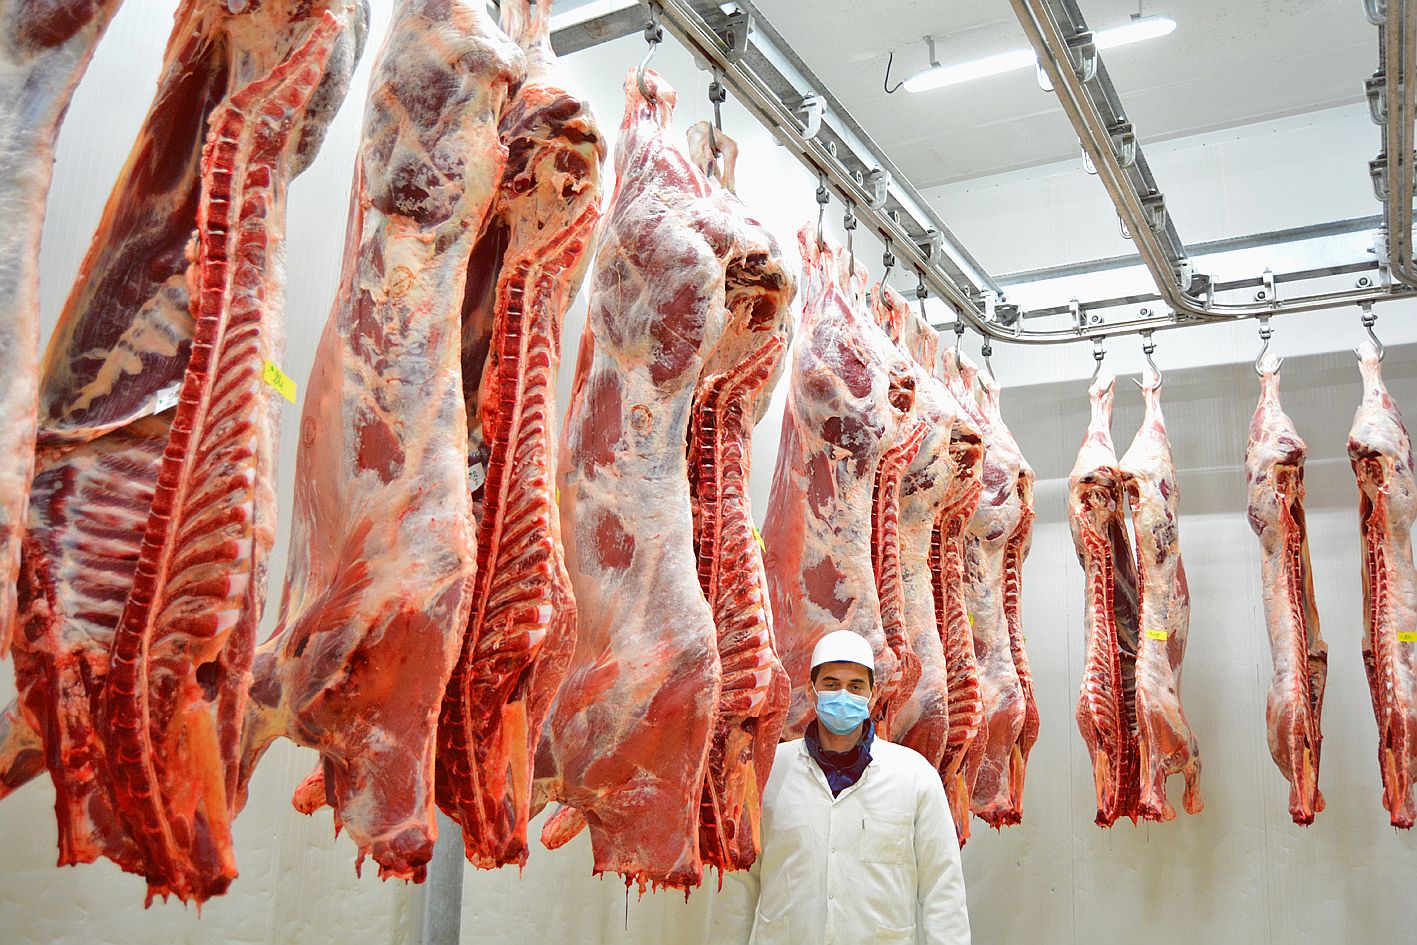 Après les grosses bêtes, le jury a passé au crible les onze carcasses de veau présentées, ici, par Mathieu Ottogali.